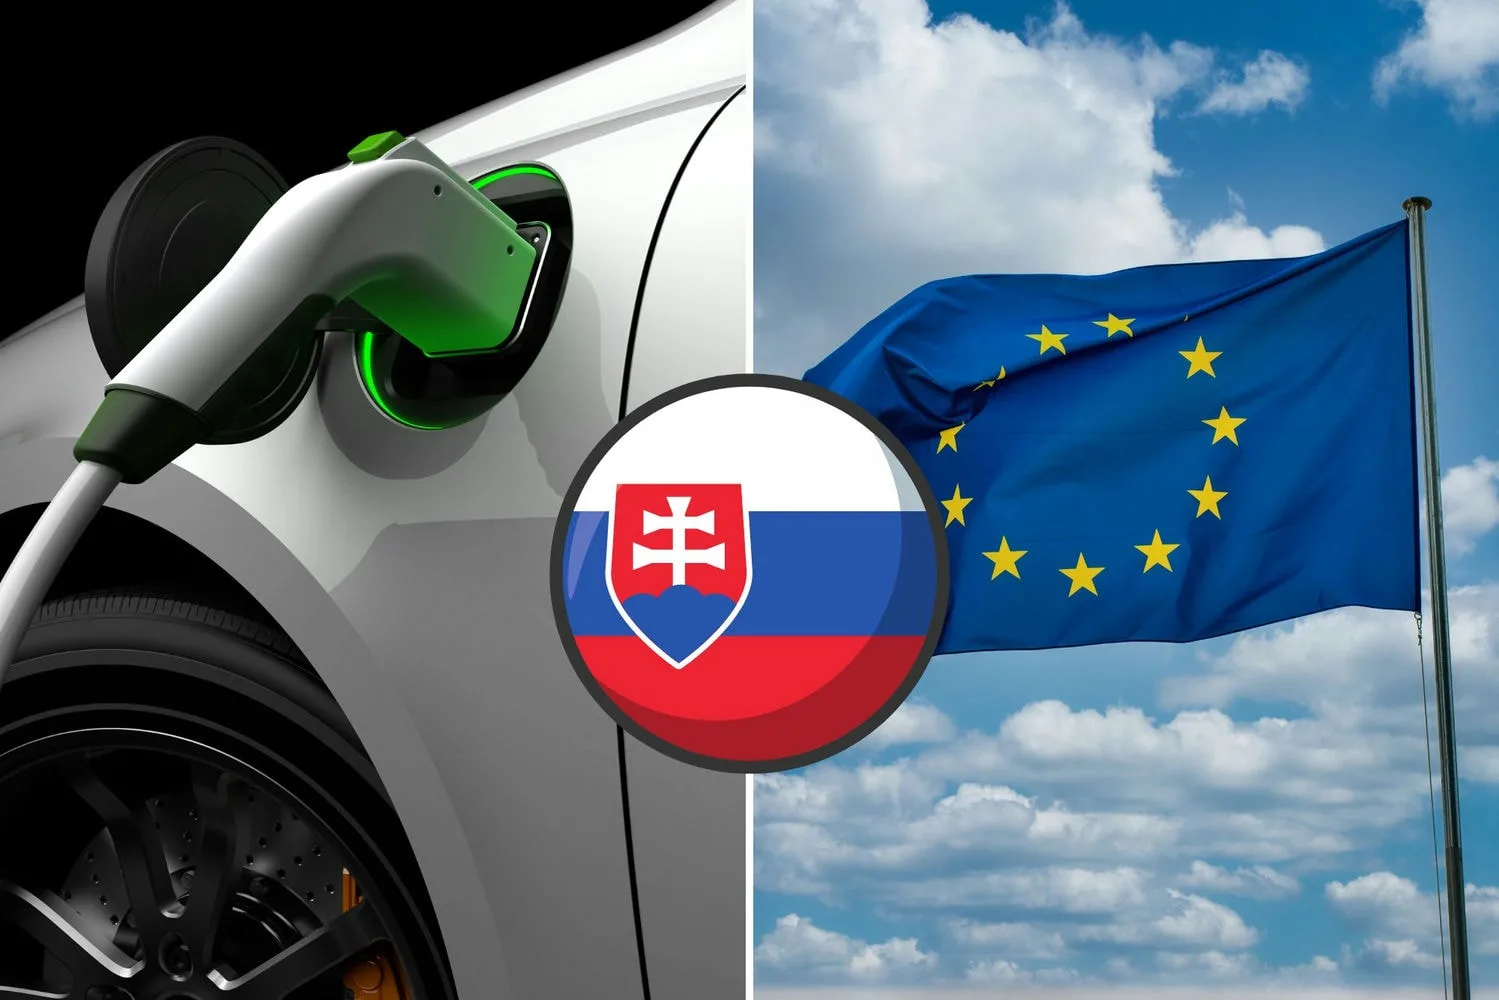 elektromobil slovensko eu jpg